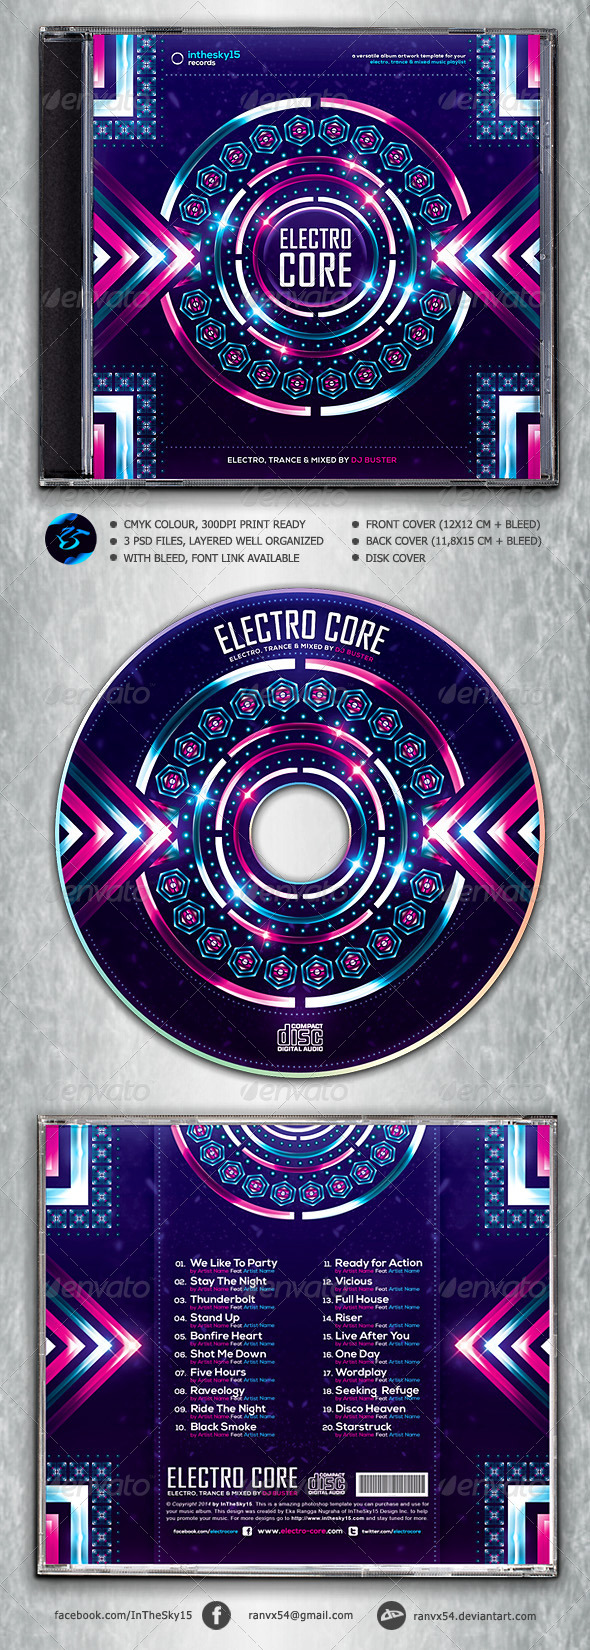 دانلود طرح لایه باز کاور آلبوم Electro Core